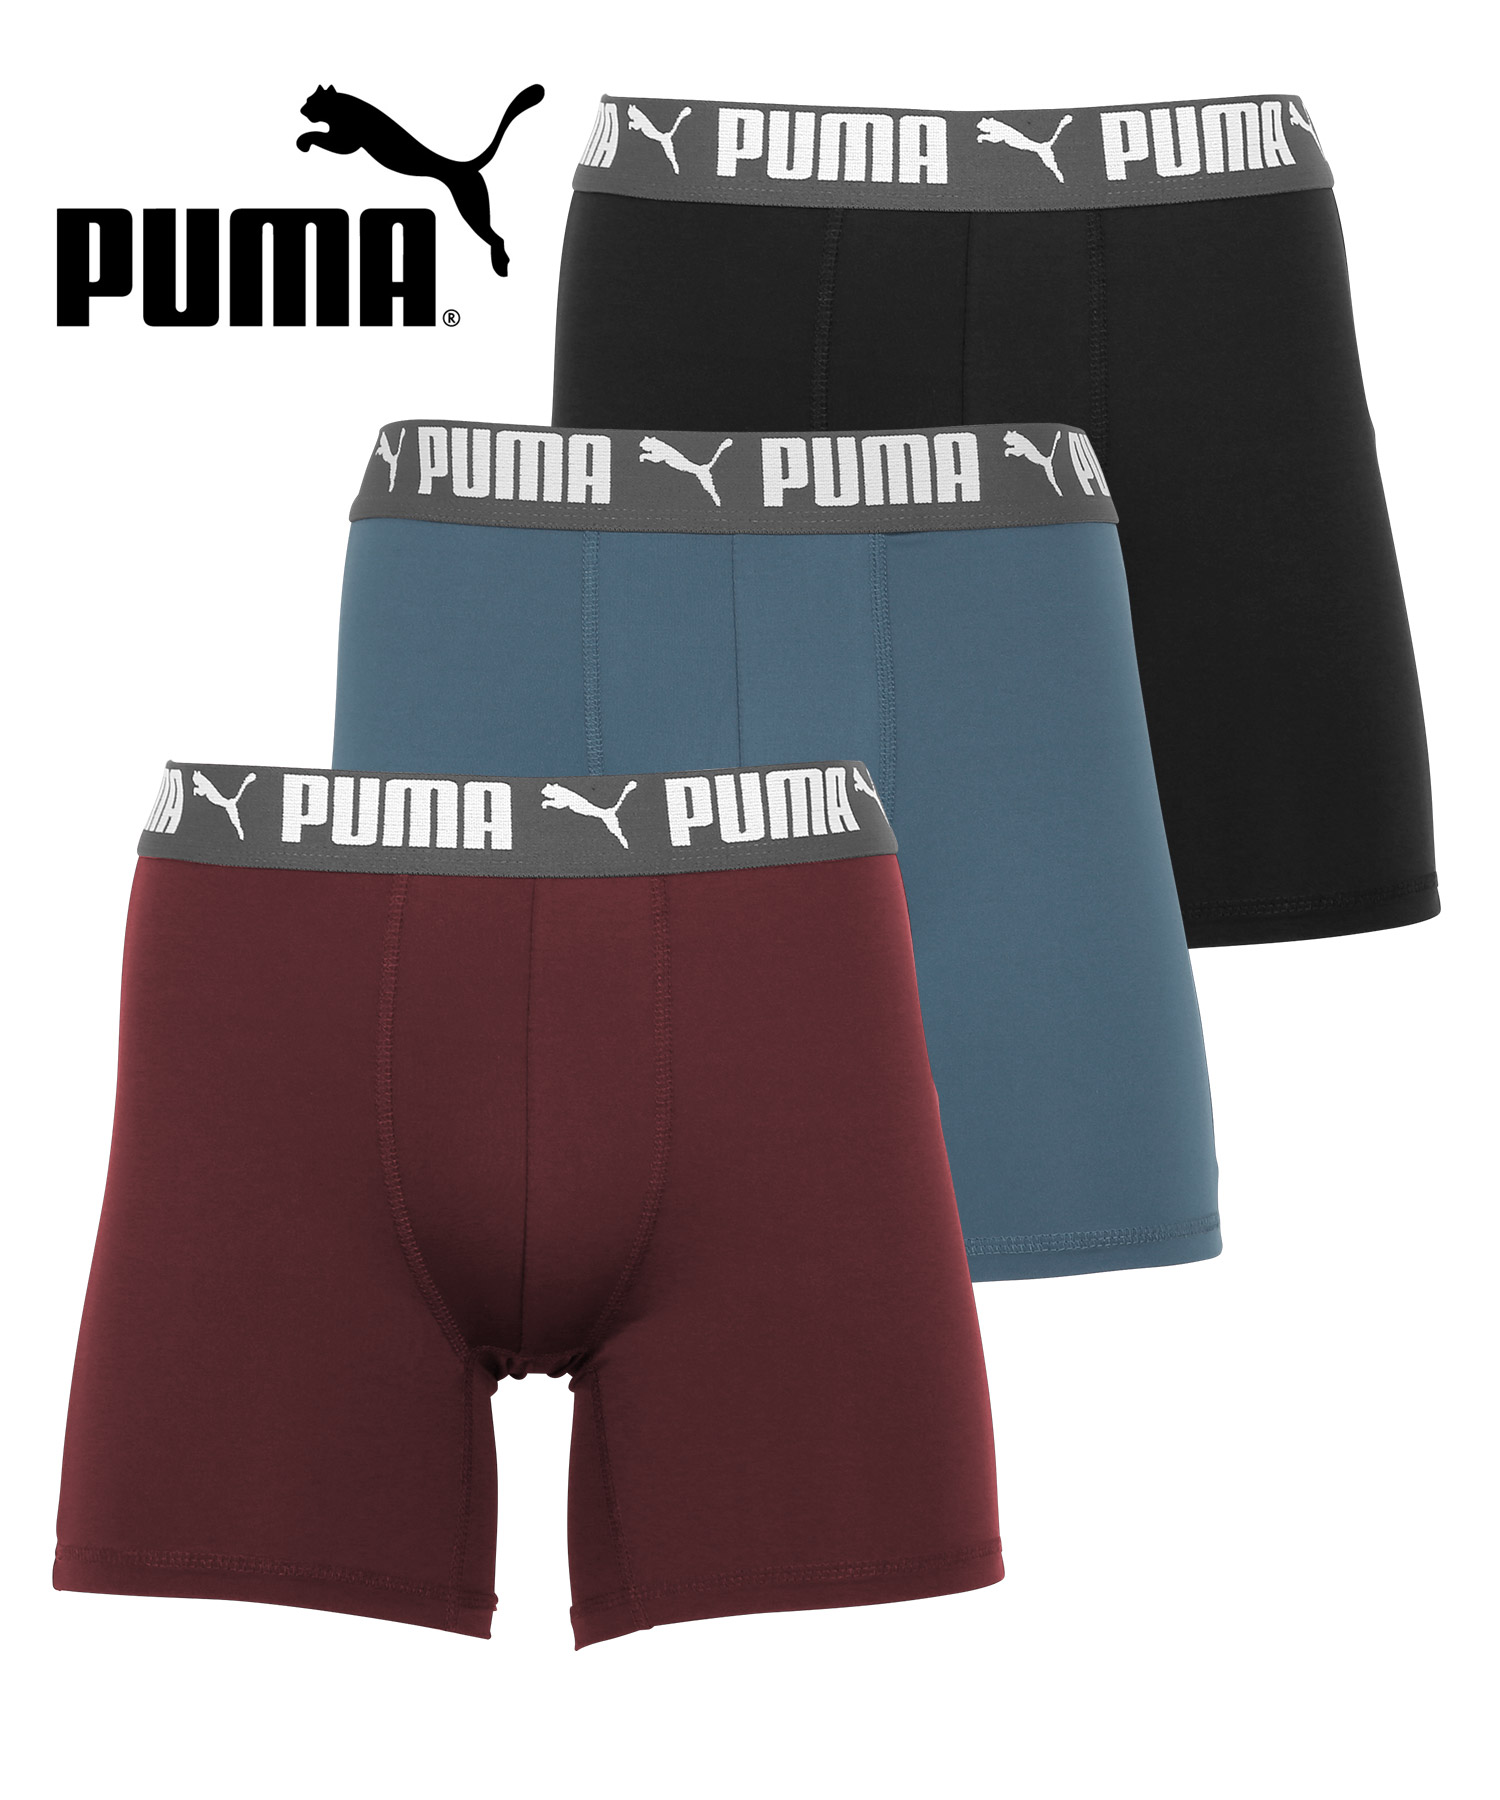 プーマ PUMA 3枚セット ボクサーパンツ メンズ ツルツル 速乾 トレーニング ジム 迷彩 ブラ...